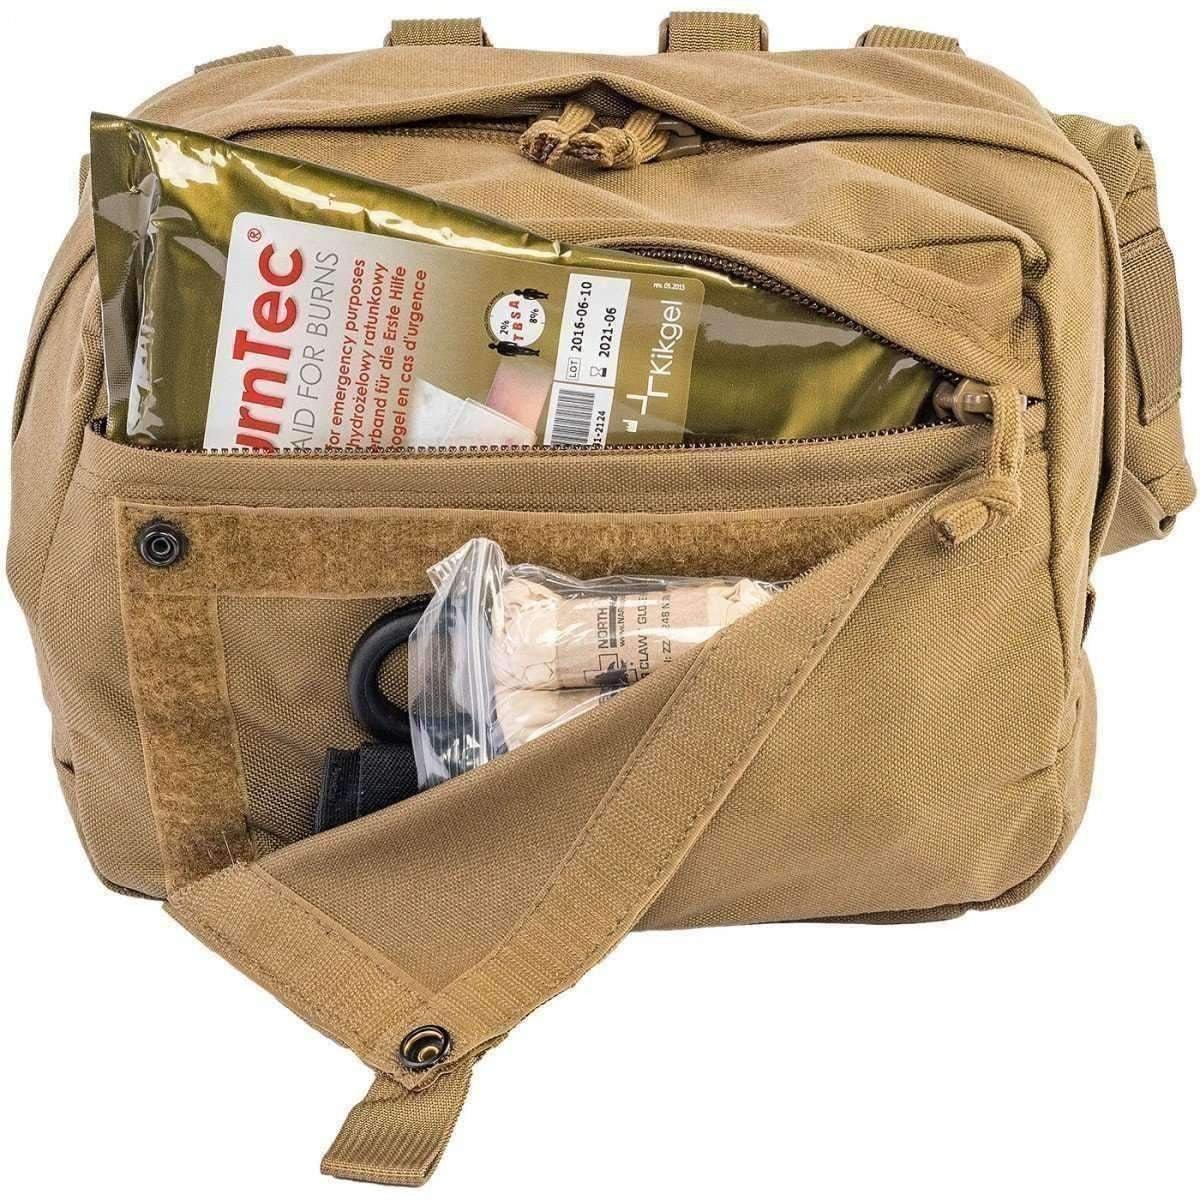 USMC Combat Lifesaver Kit - Vendor